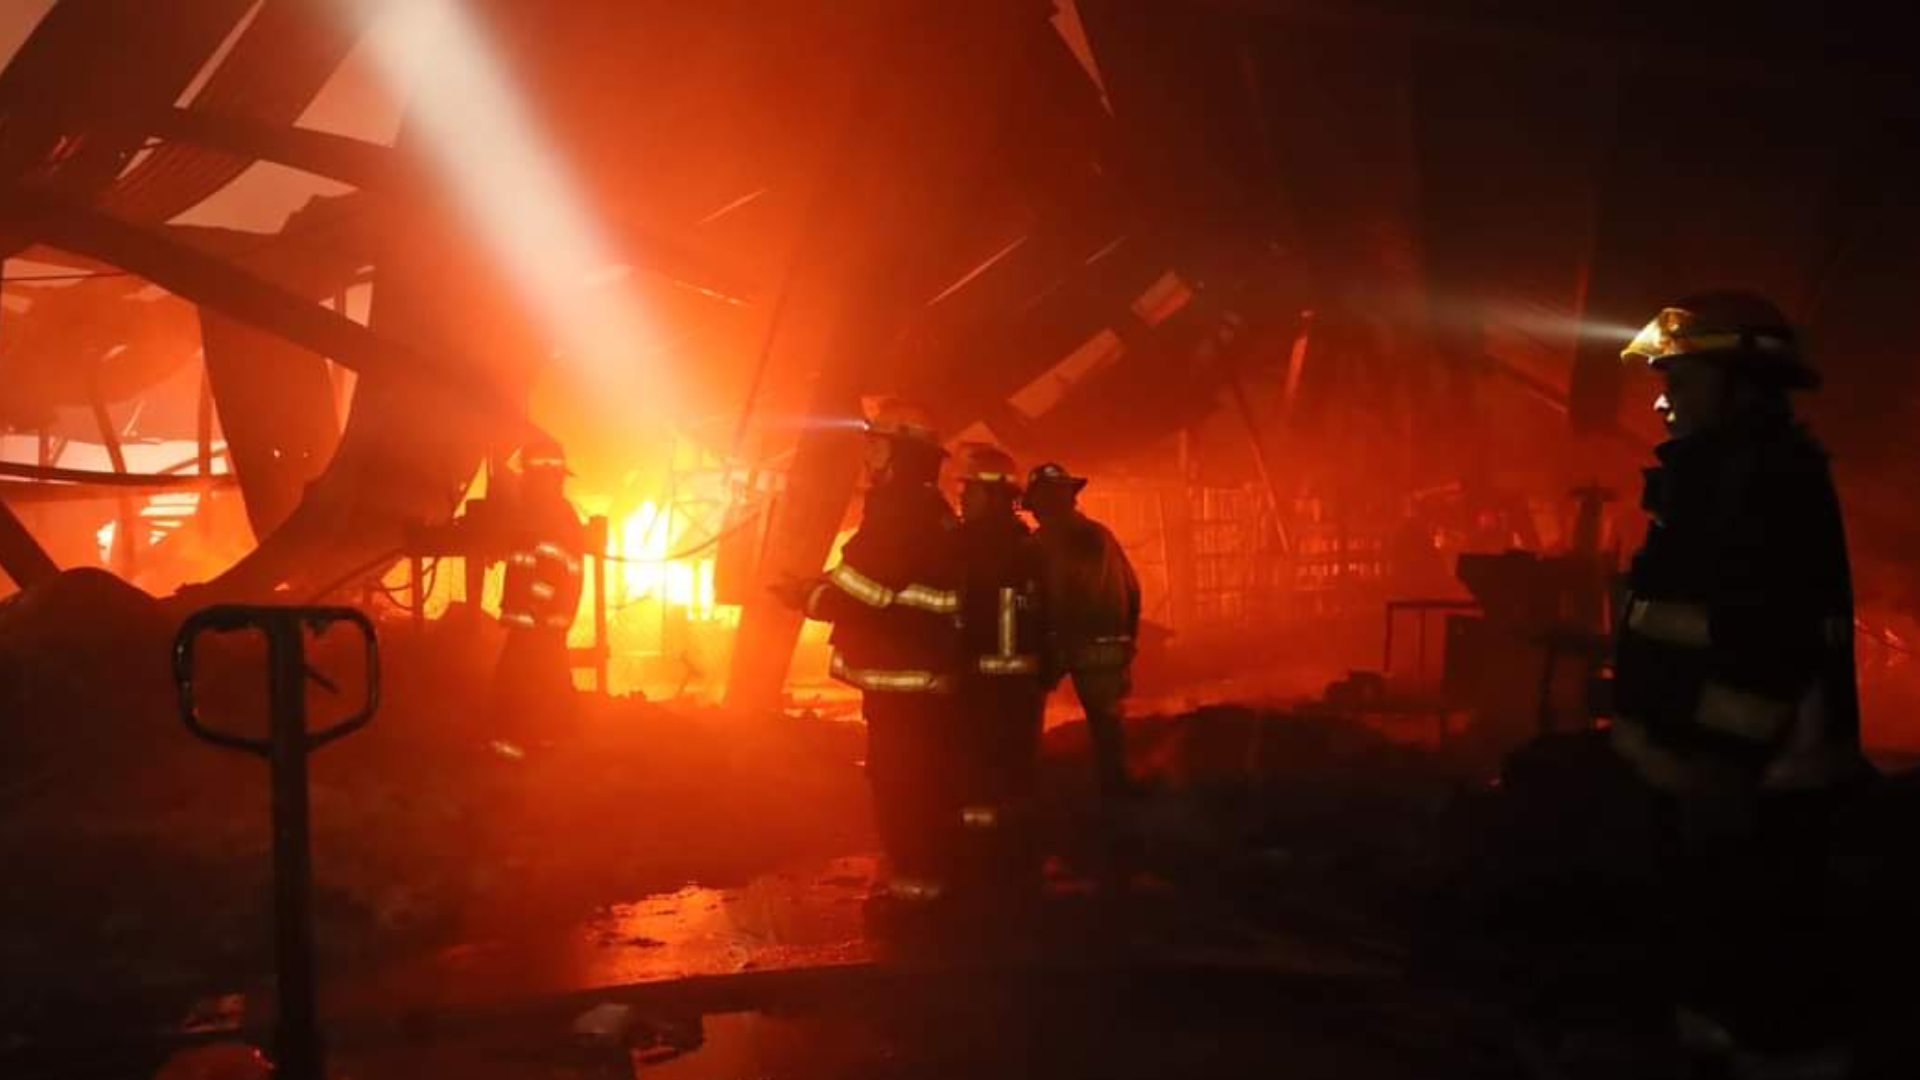 Imágenes del incendio que consumió una fábrica de sandalias en Álamo Industrial, Jalisco